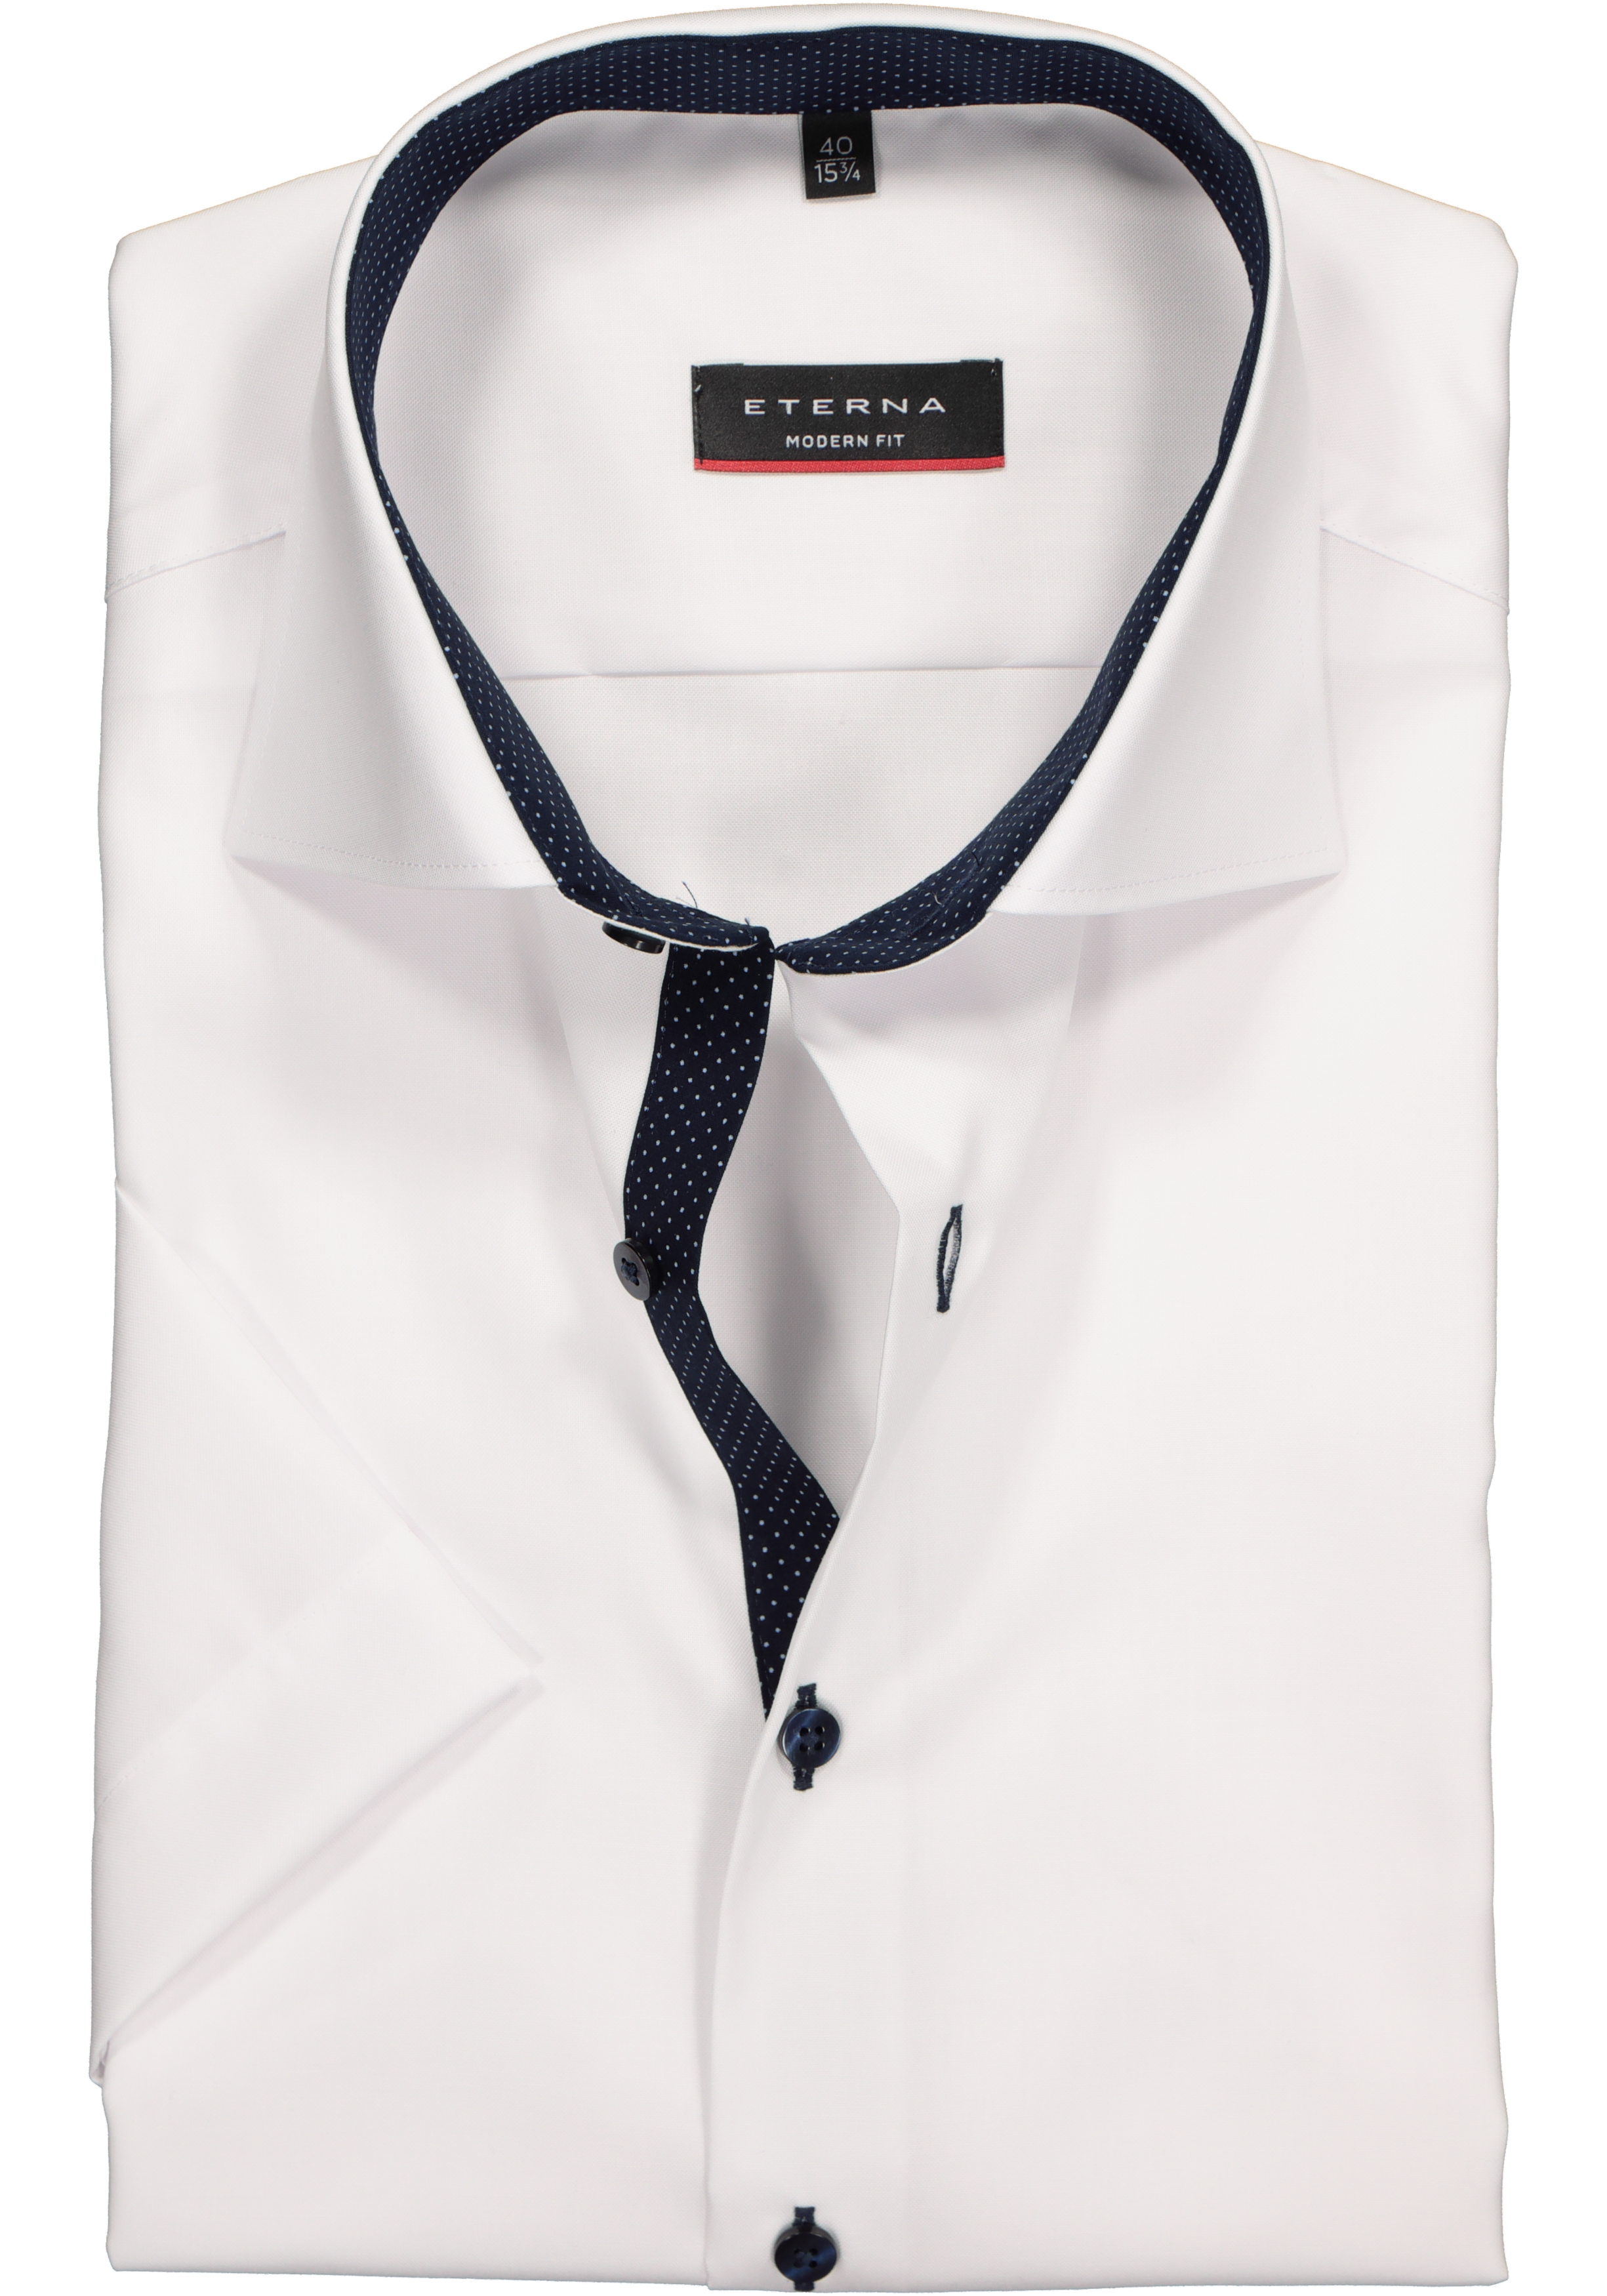 werknemer Willen symbool ETERNA modern fit overhemd, korte mouw, heren overhemd fijn Oxford, wit...  - Shop de nieuwste voorjaarsmode